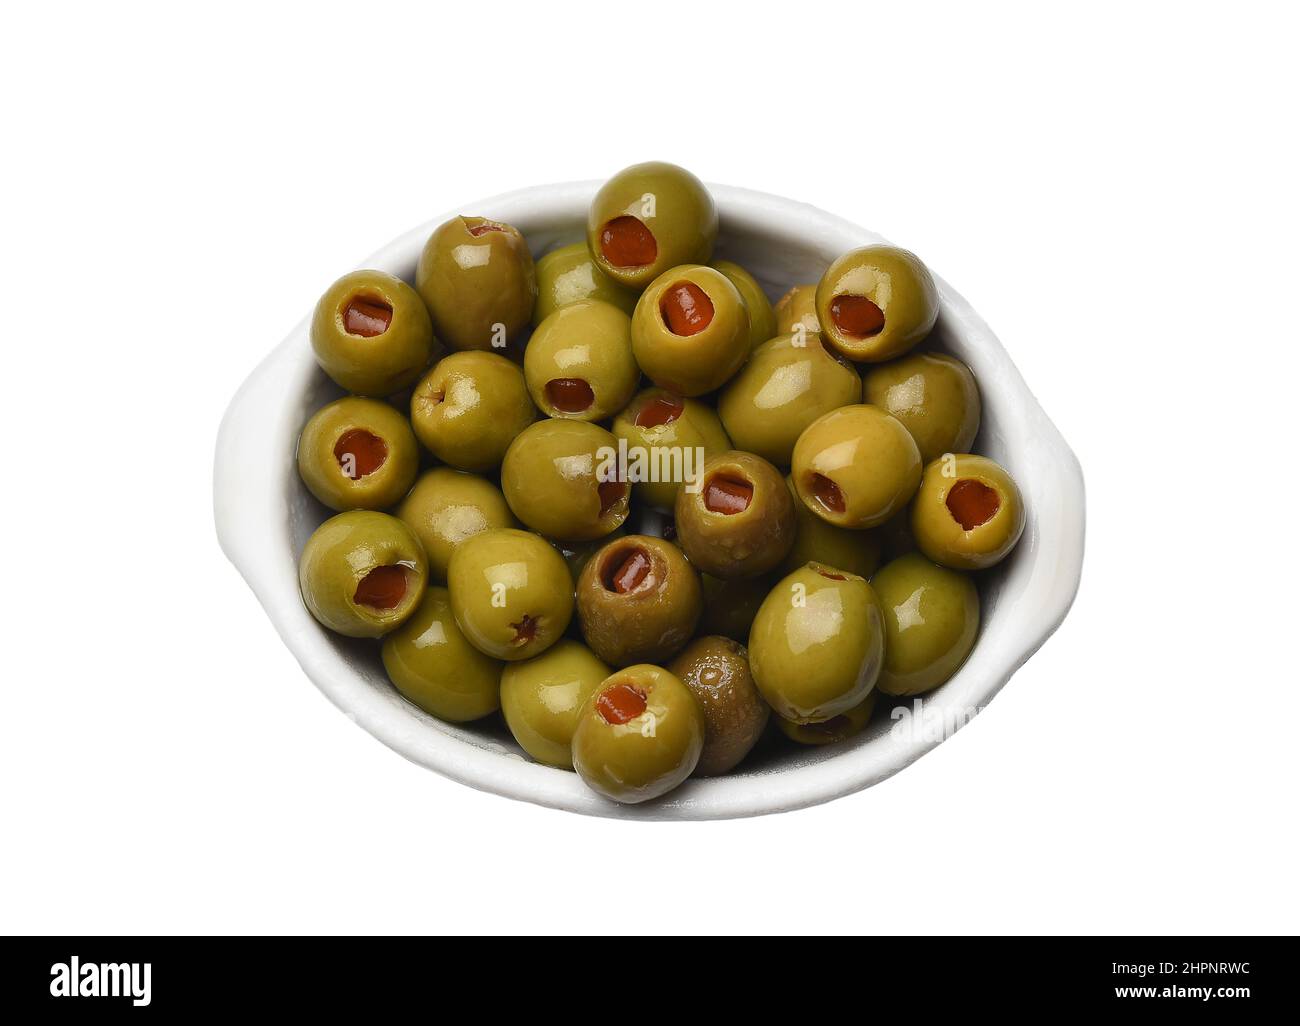 Un plat de relish rempli d'olives vertes farcies au piment Banque D'Images